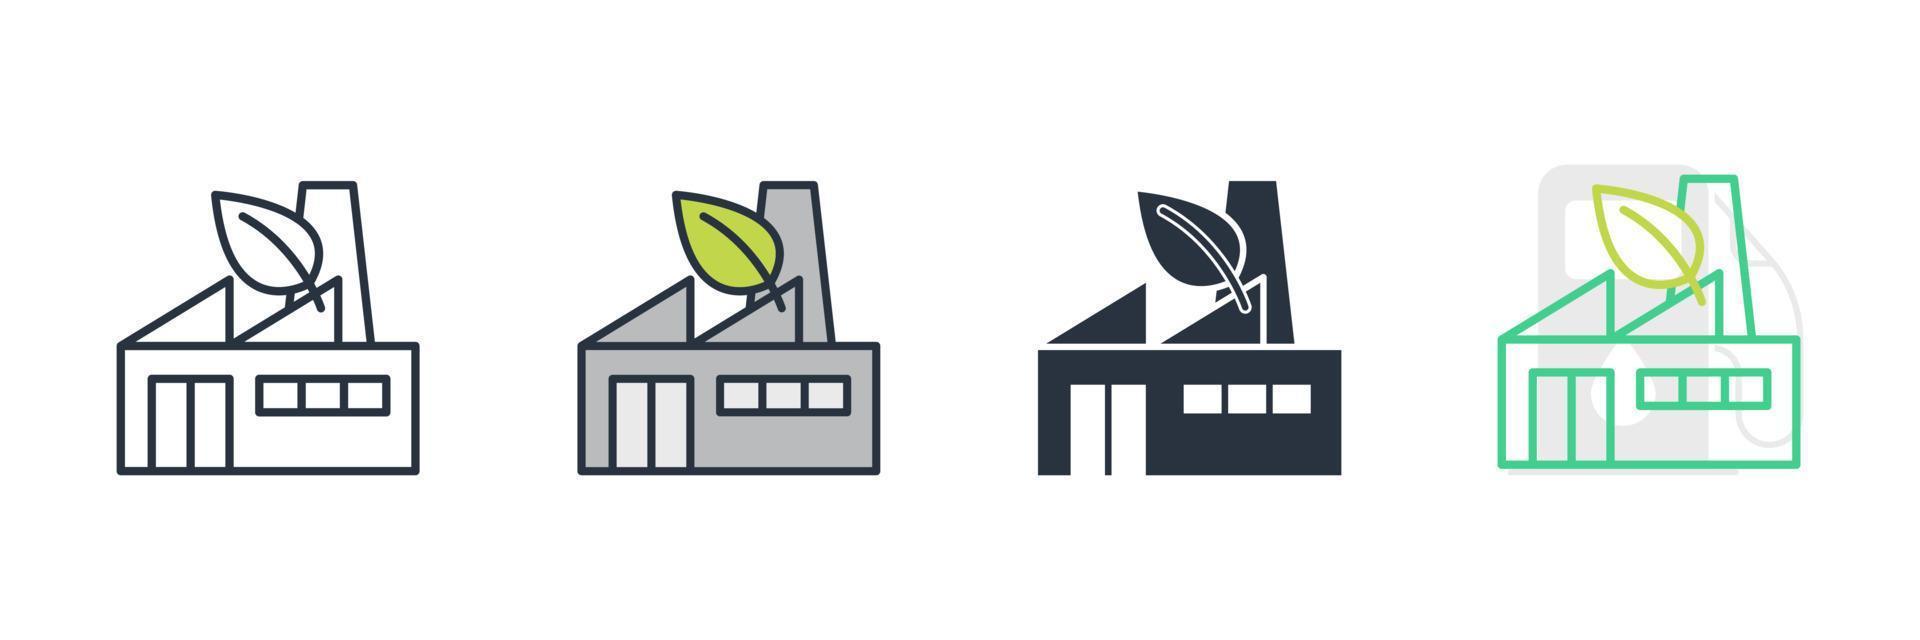 grön fabriksikon logotyp vektorillustration. grön och ekologi fabrik symbol mall för grafisk och webbdesign samling vektor